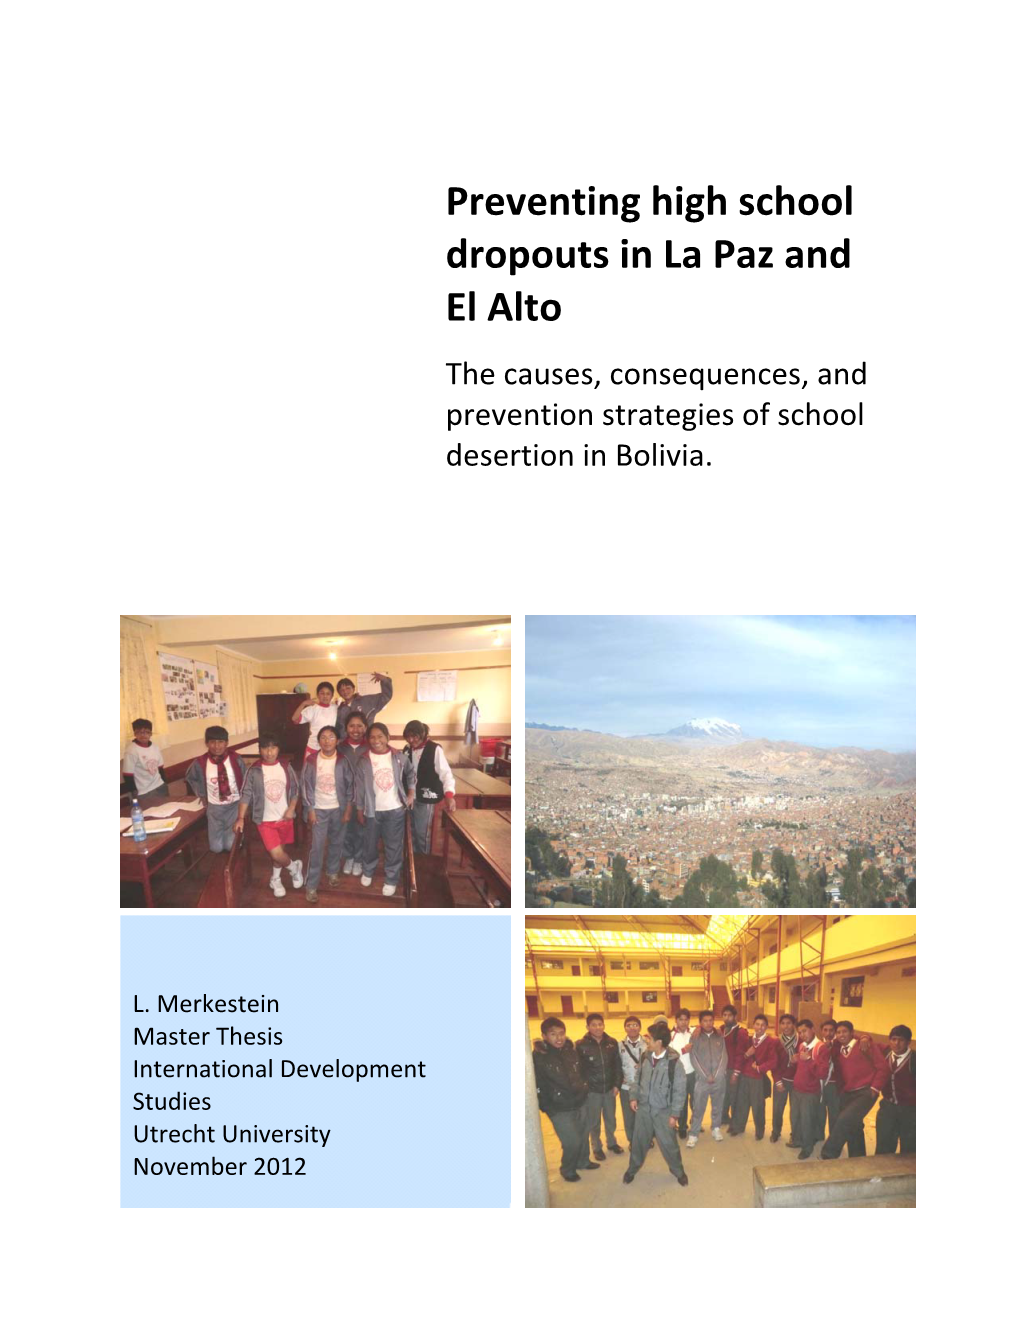 Preventing High School Dropouts in La Paz and El Alto